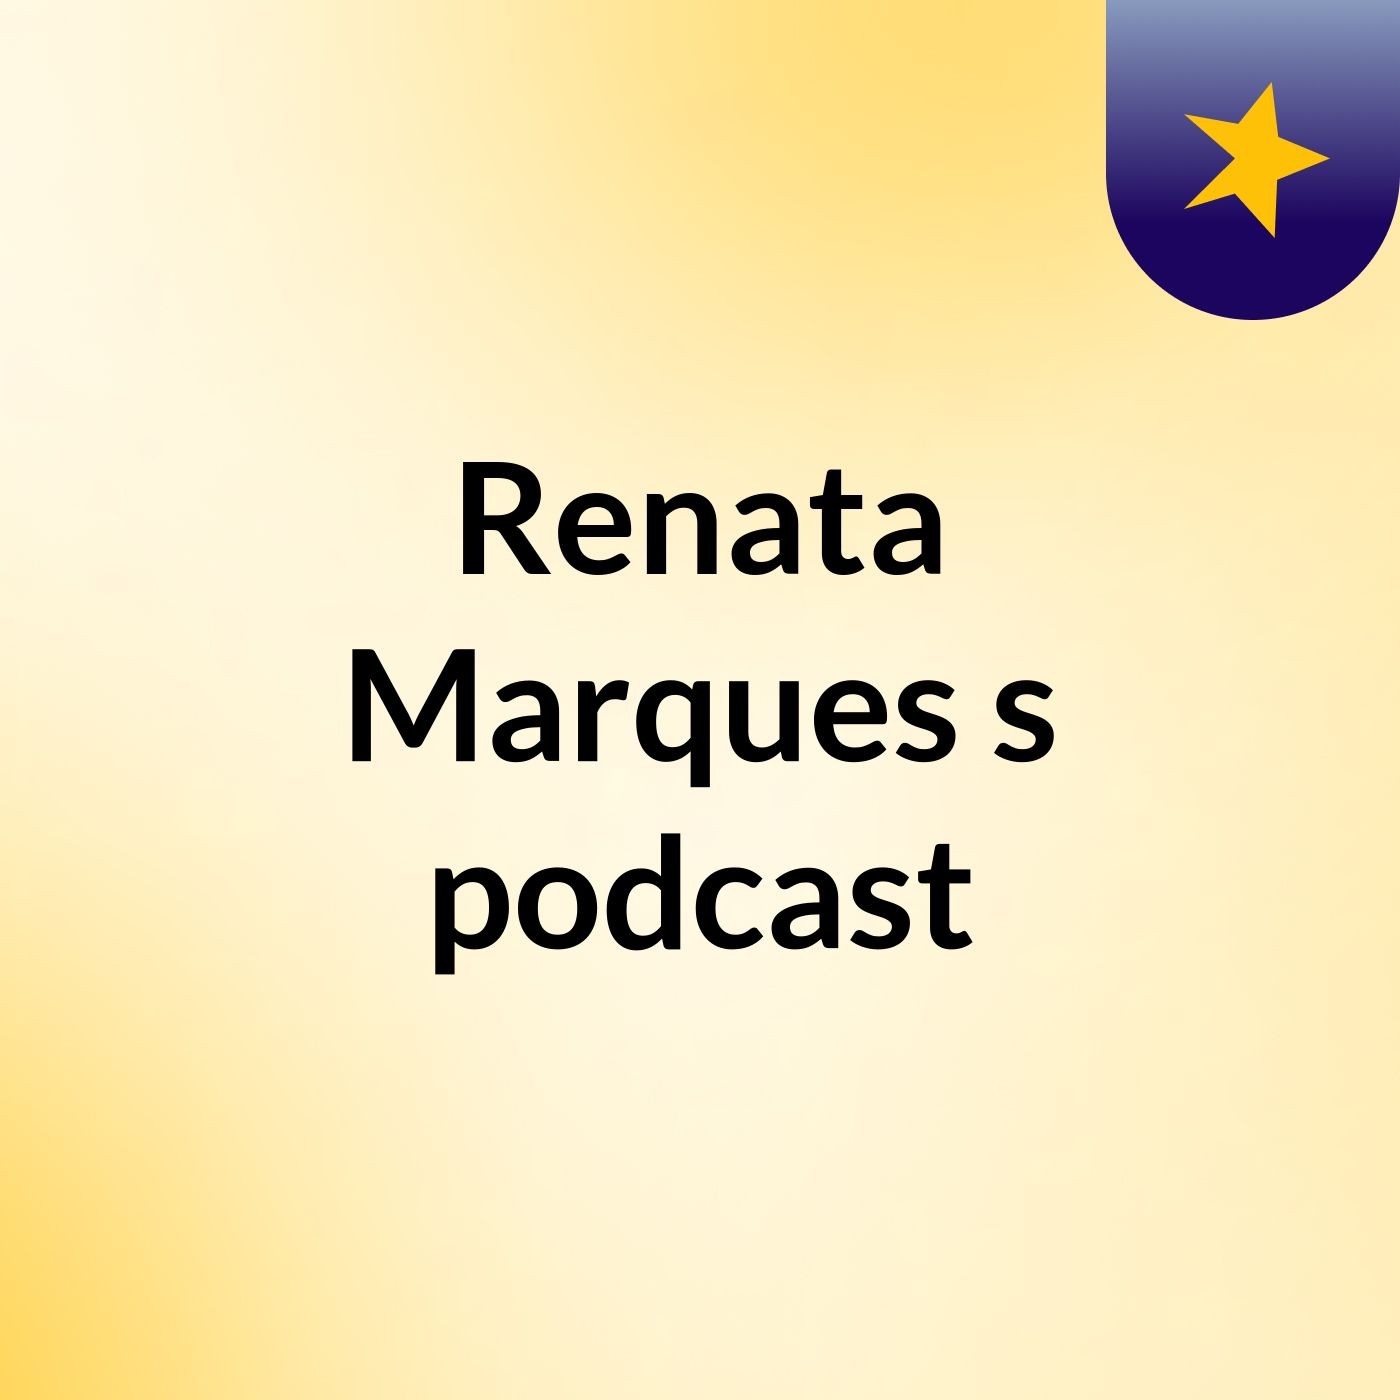 Renata Marques's podcast